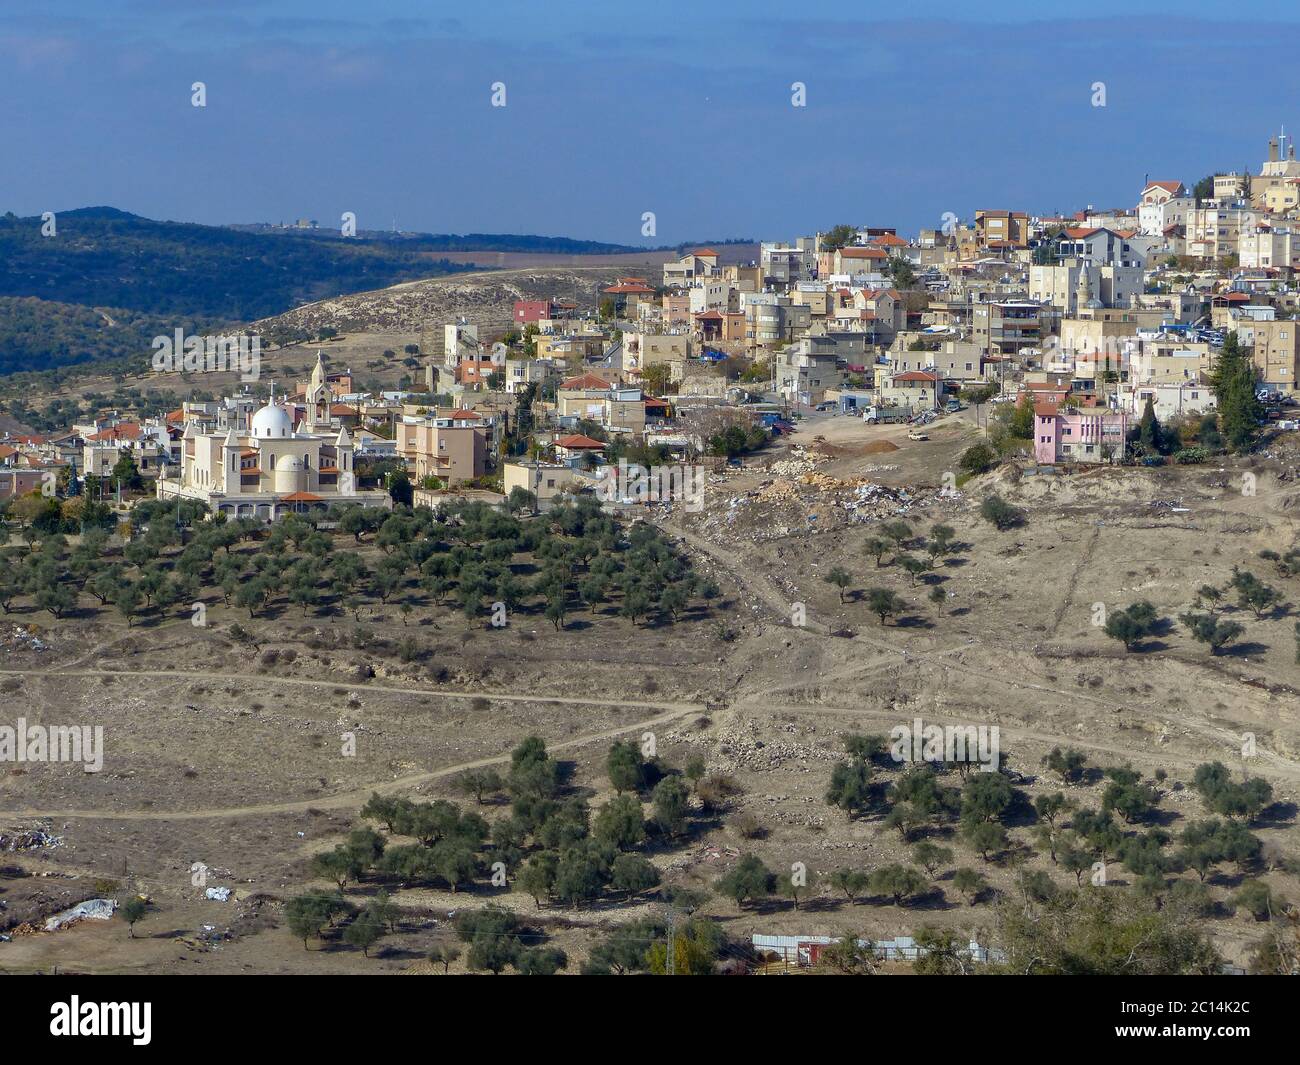 Israel, en Galilea. Vista aérea de una aldea árabe construida sobre una montaña Foto de stock